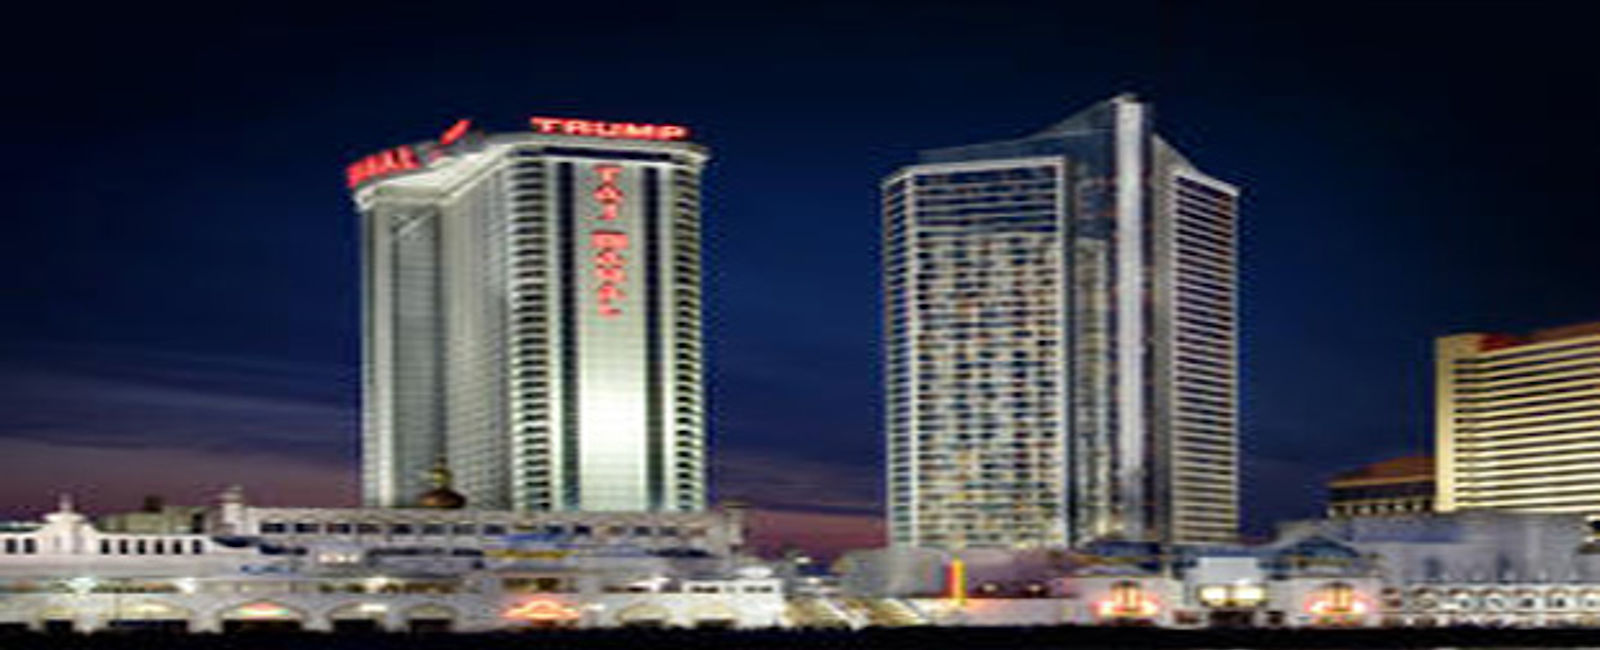 HOTEL TIPPS
 Trump Taj Mahal Casino Resort 
 Top Kasino-Hotel mit einem tollen Luxus-Angebot 